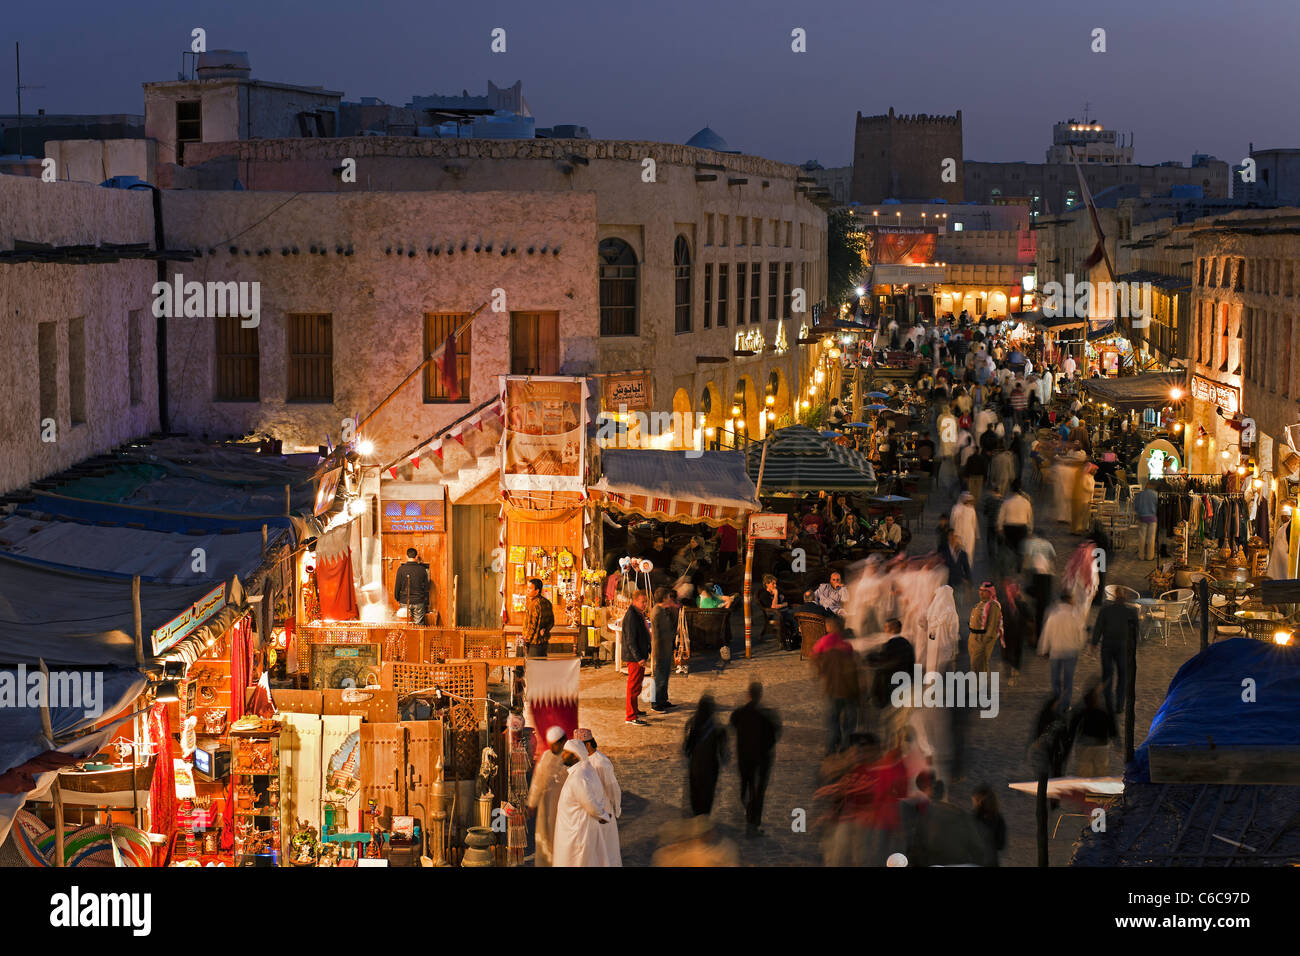 Katar, Naher Osten, Arabische Halbinsel, Doha, dem restaurierten Souq Waqif mit Schlamm gerendert Geschäfte und Holzbalken ausgesetzt Stockfoto